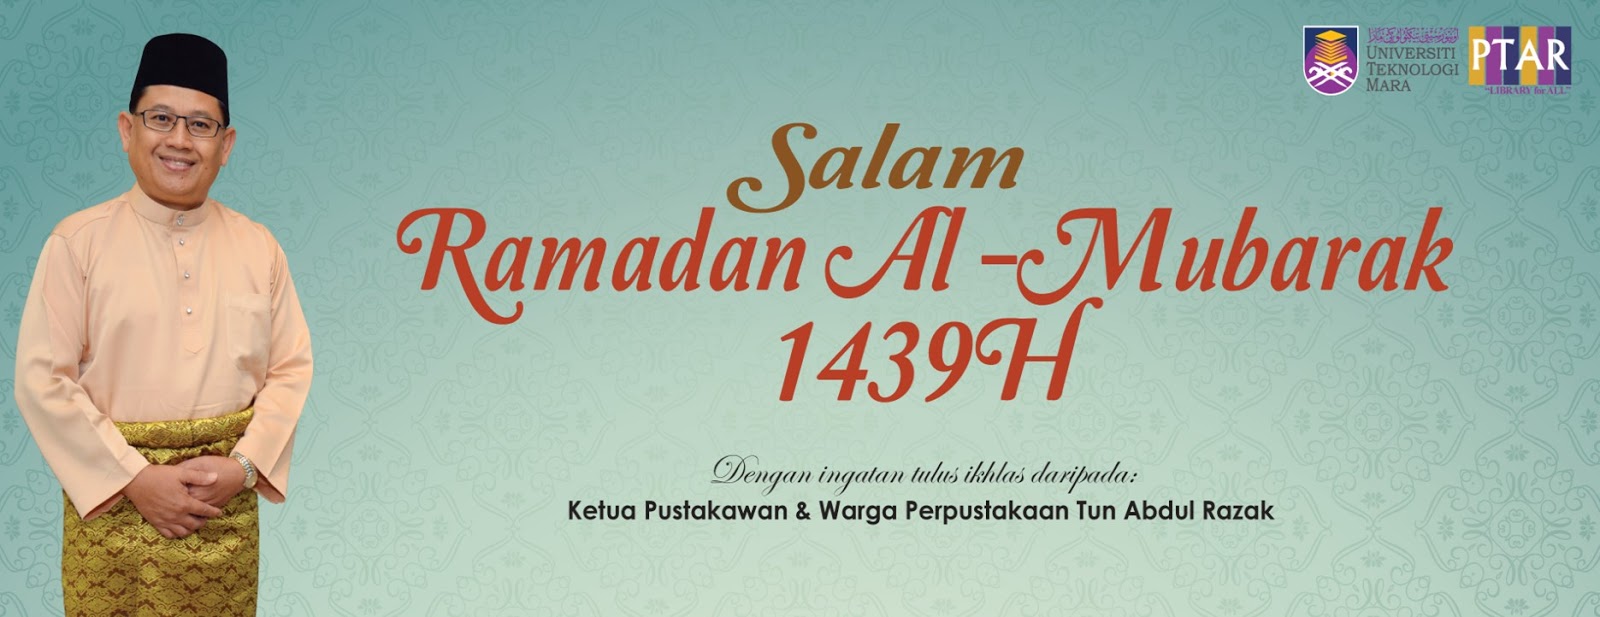 Salam Ramadhan Al-Mubarak 1439H daripada Ketua Pustakawan 